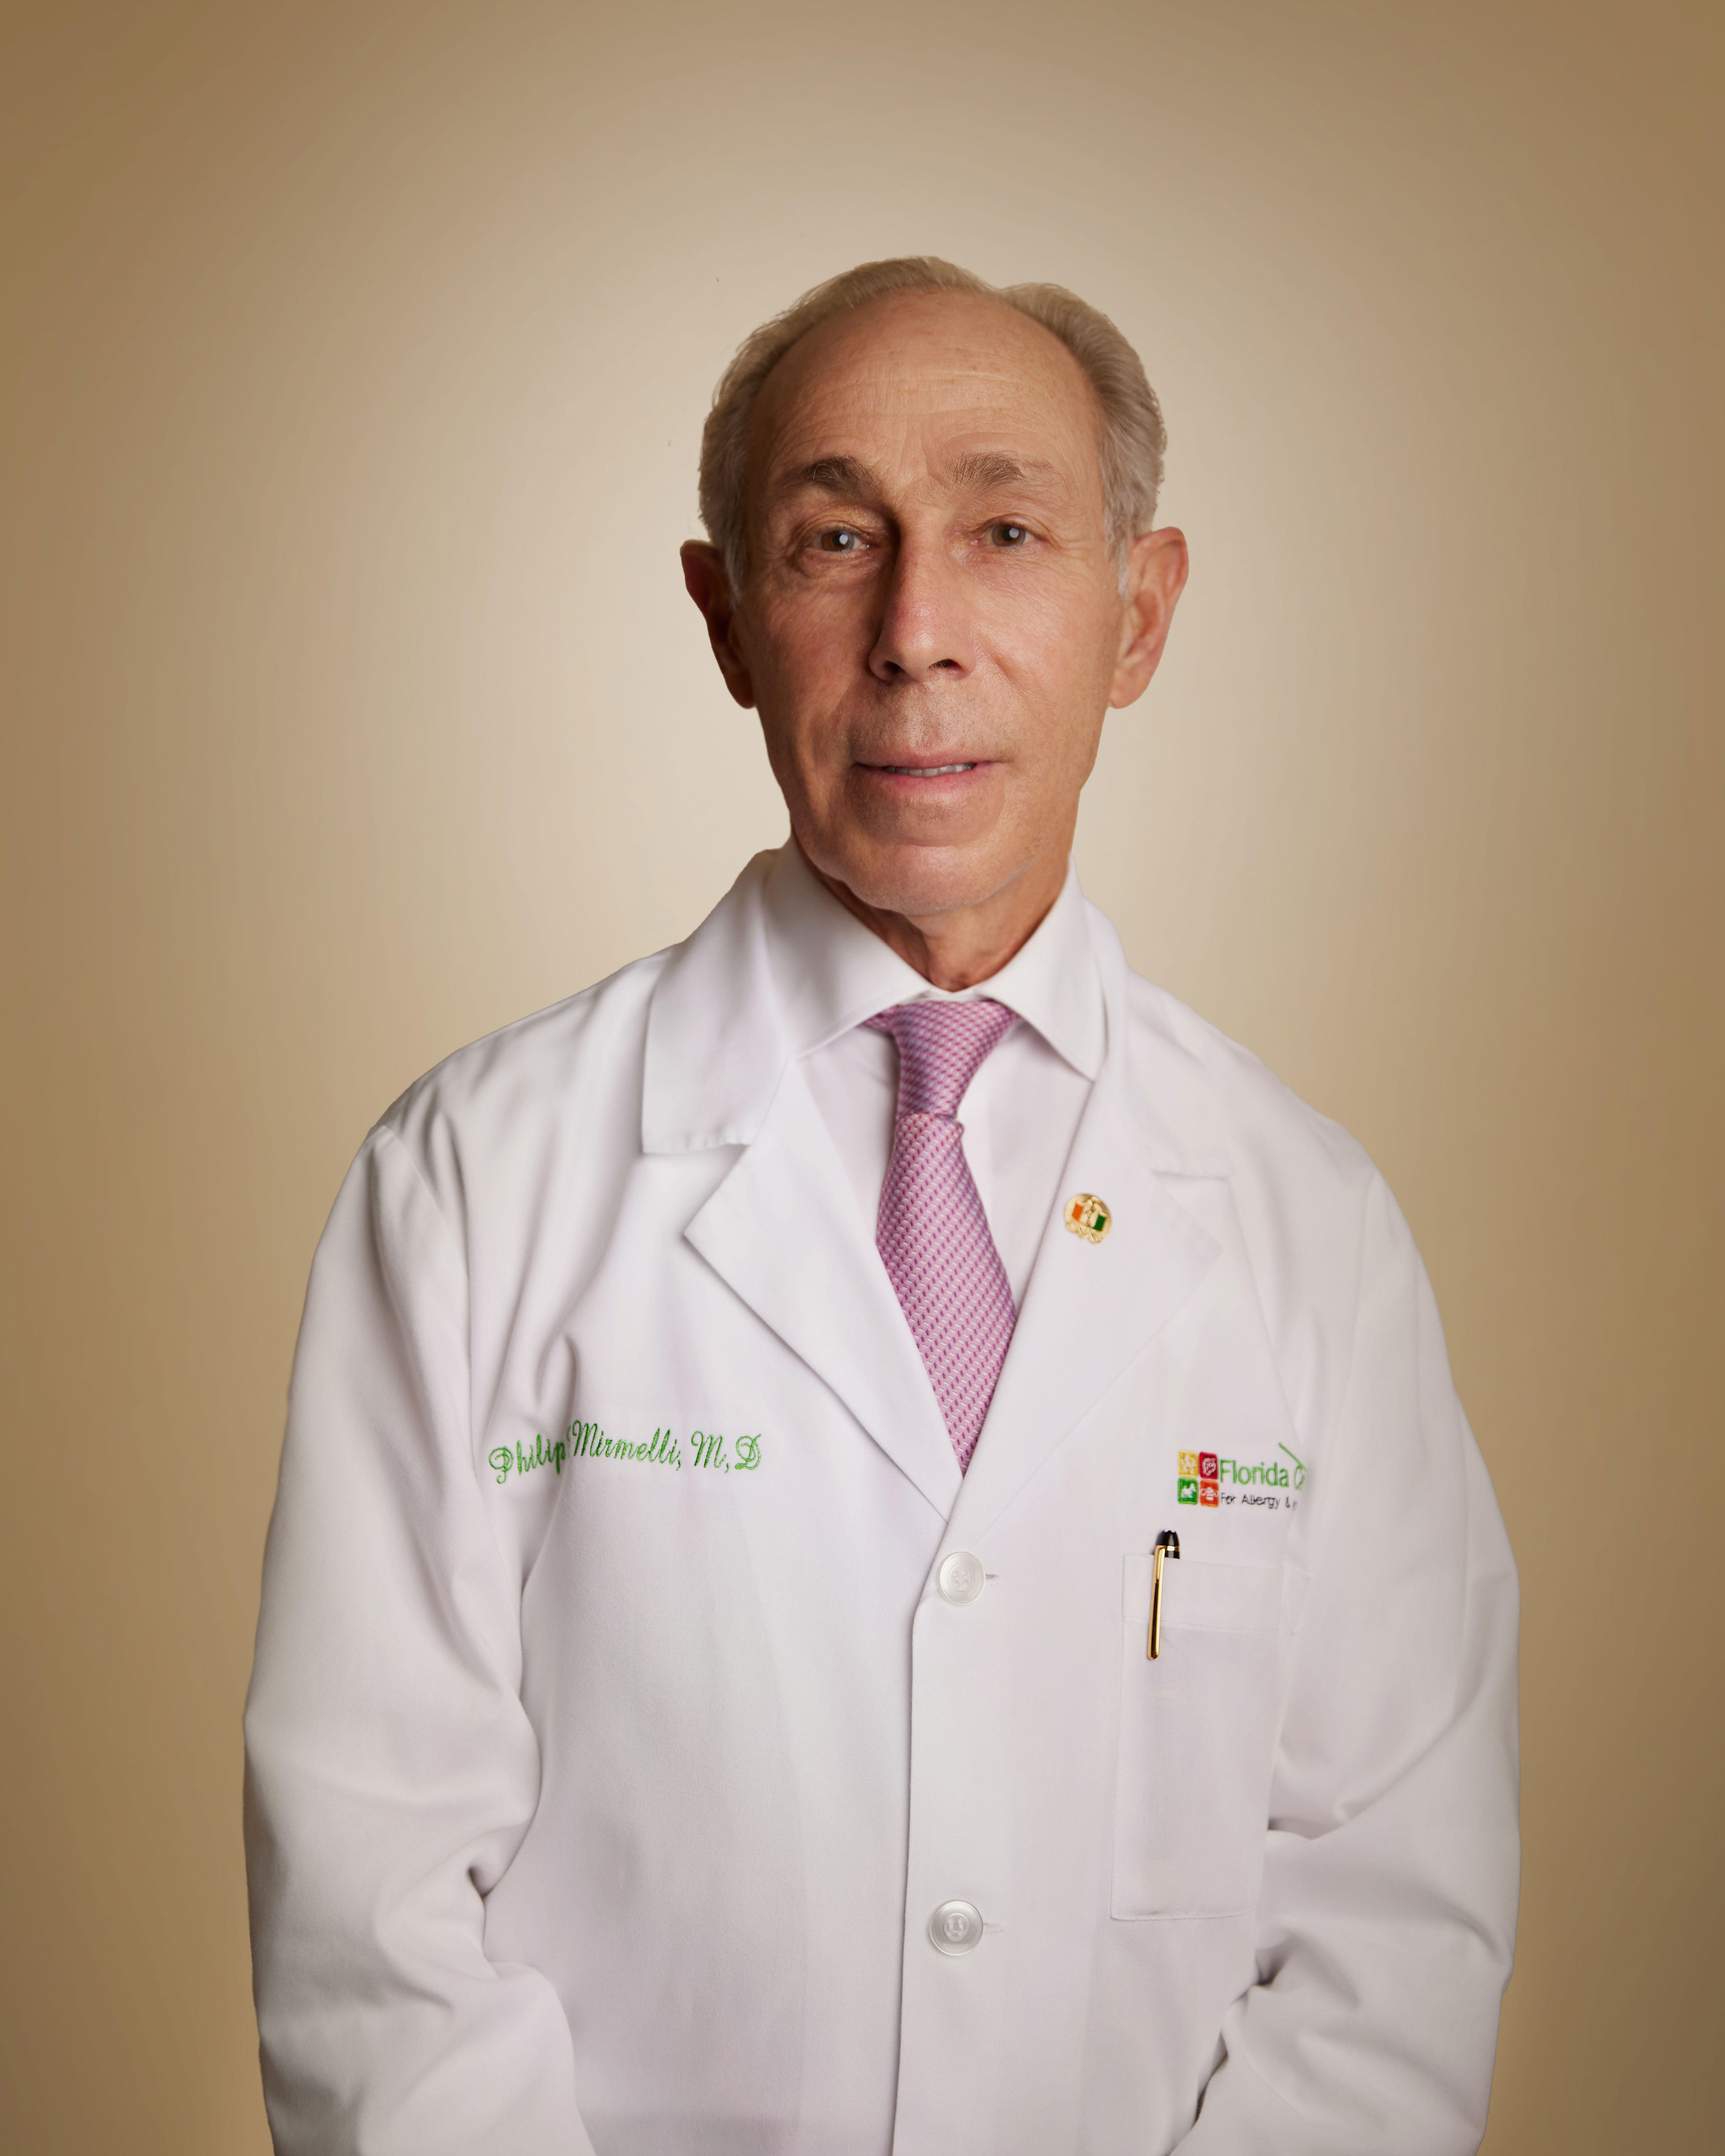 Dr. Philip C. Mirmelli, MD